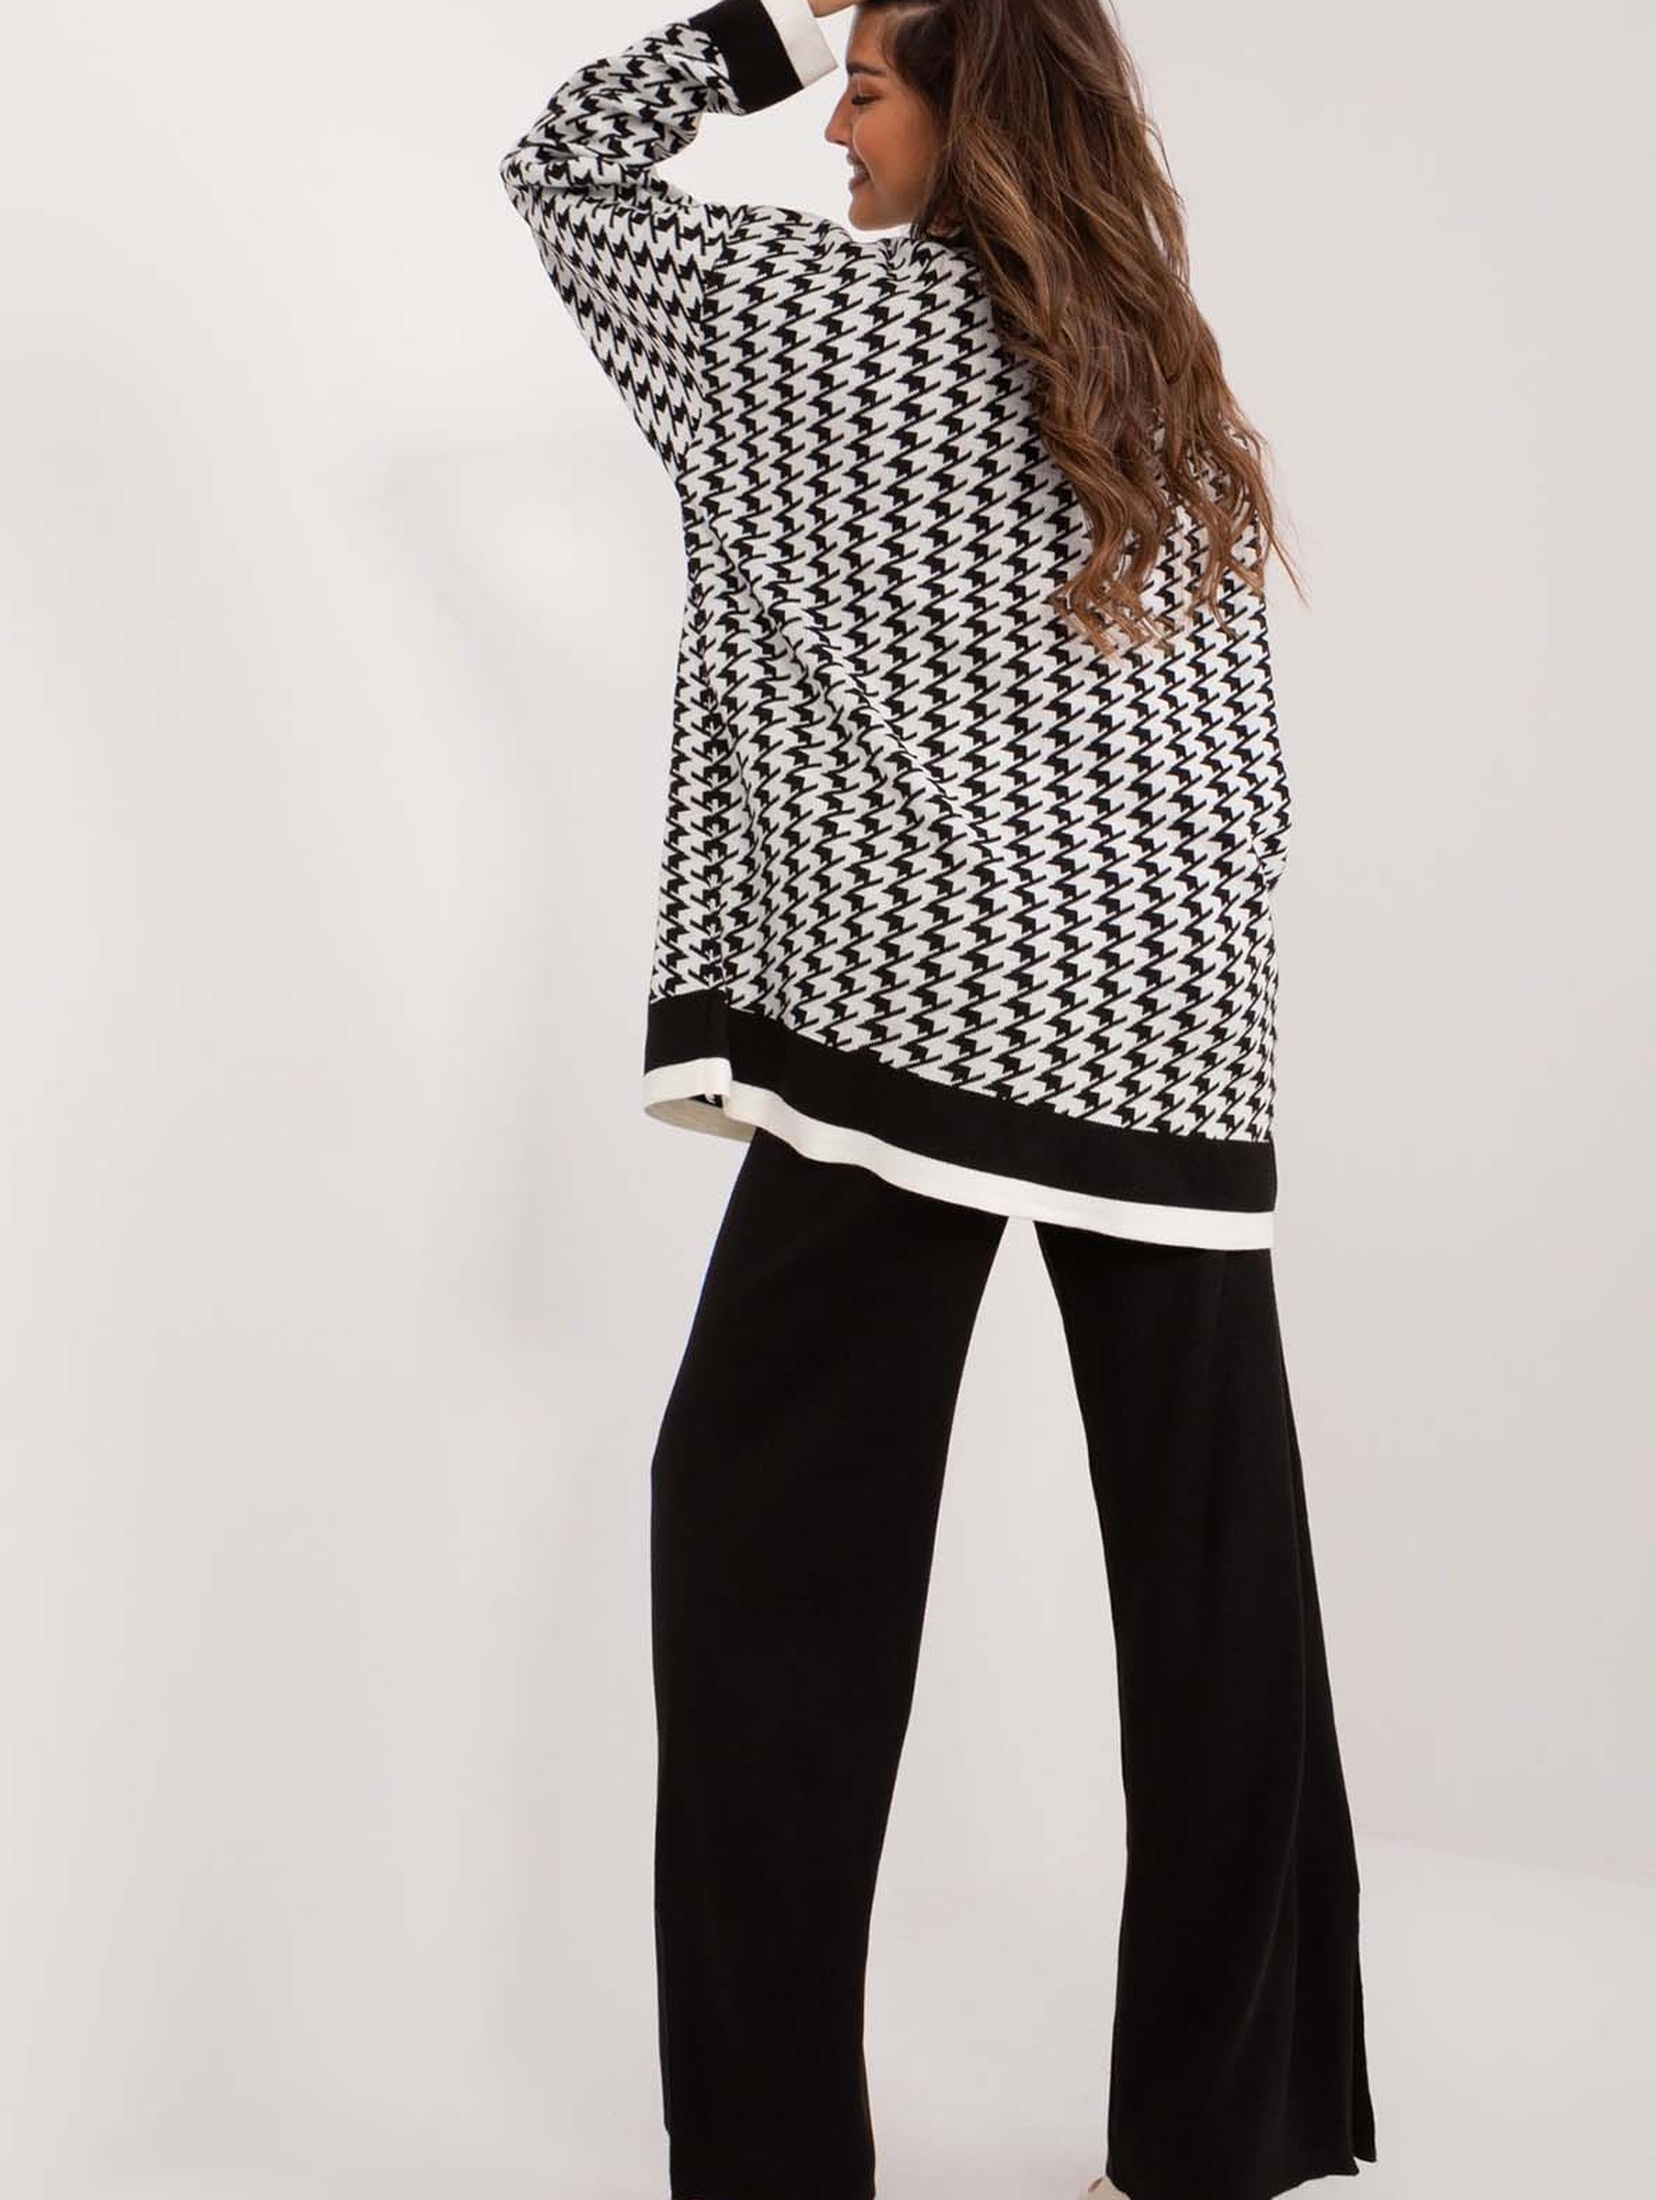 Elegancki sweter rozpinany biało-czarny